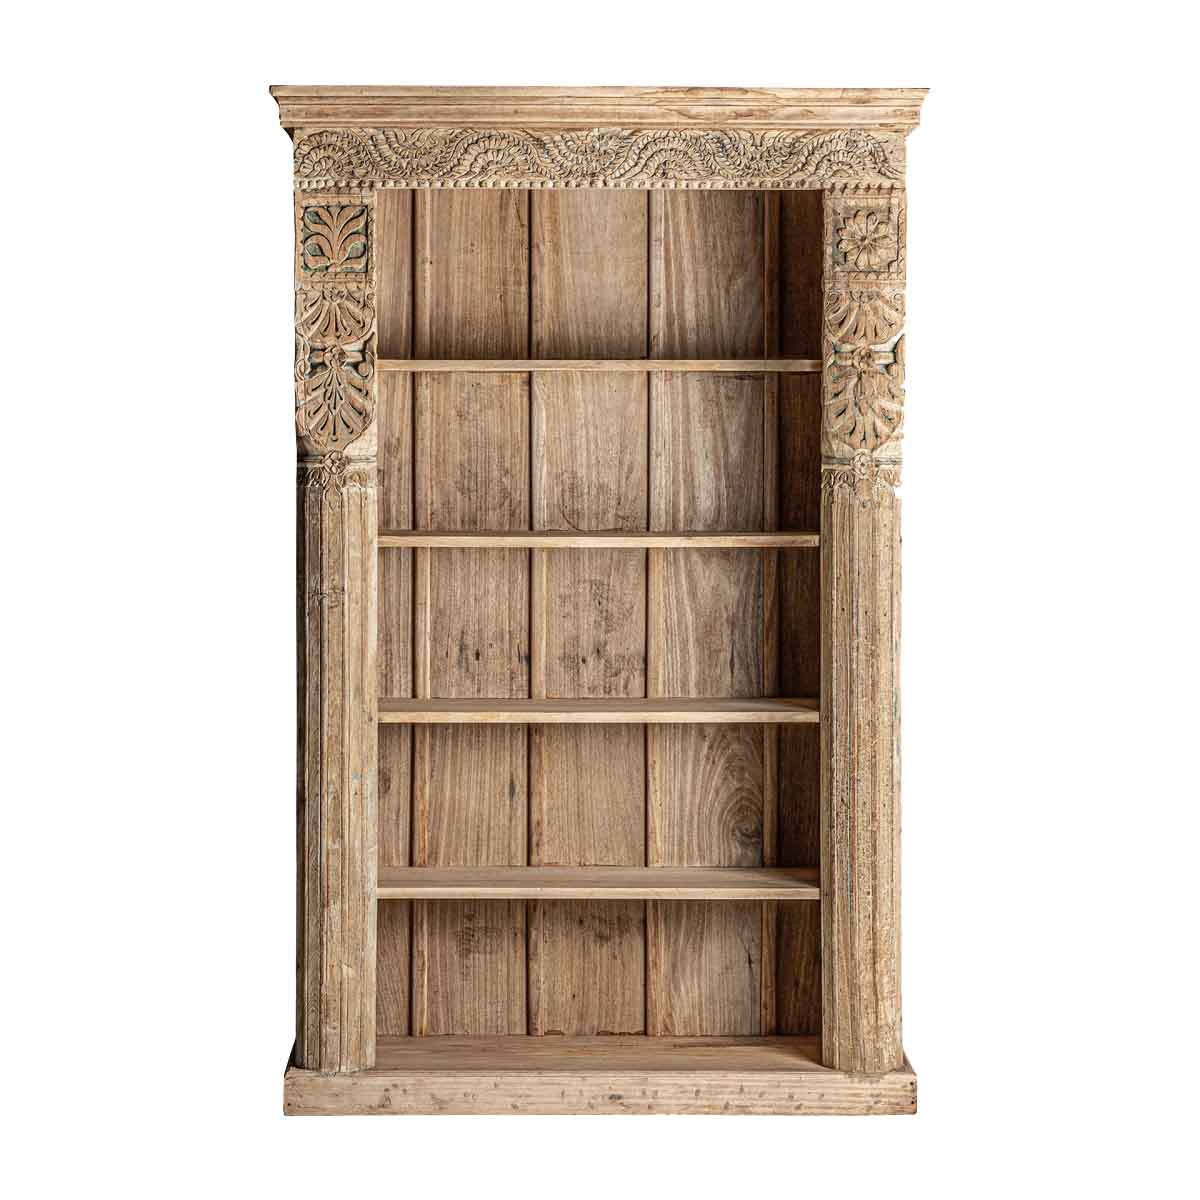 Estila Etno dřevěná knihovna Maleesa přírodní hnědé barvy s pěti poličkami a ornamentálním vyřezáváním 195cm